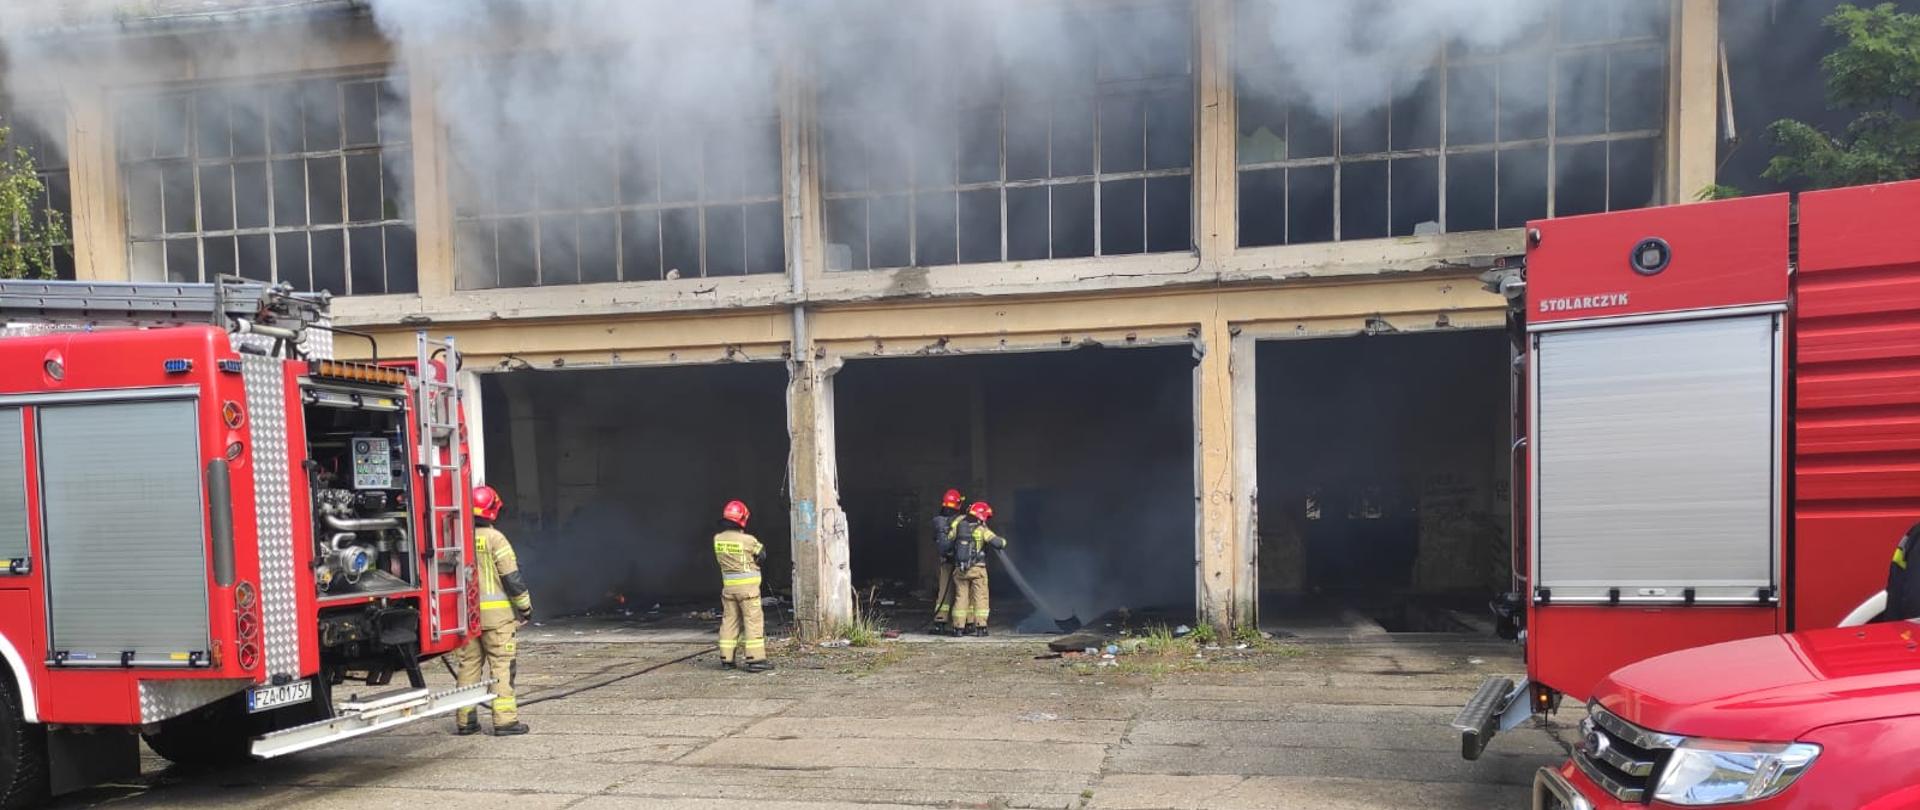 Strażacy gaszą pożar śmieci w byłym budynku jednostki wojskowej. Przed budynkiem ustawione są trzy samochody strażackie. 